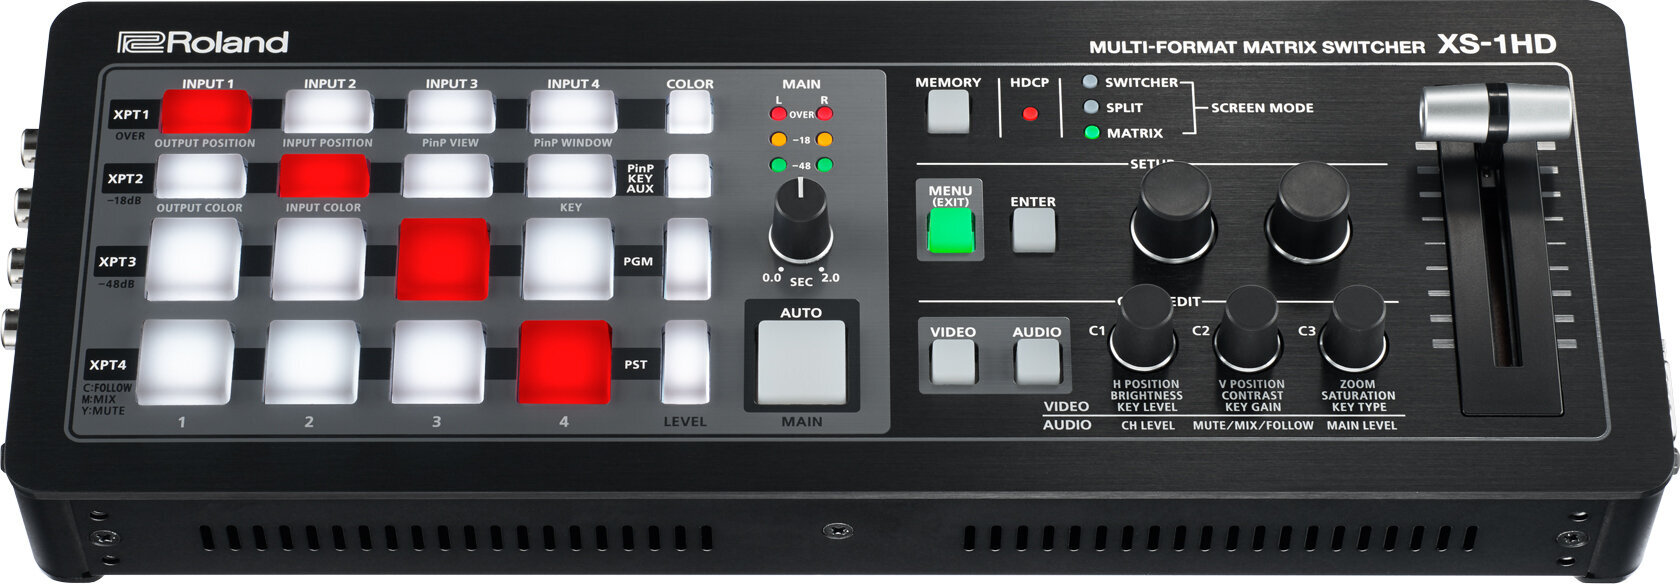 Table de Mixage Vidéo Roland XS-1HD